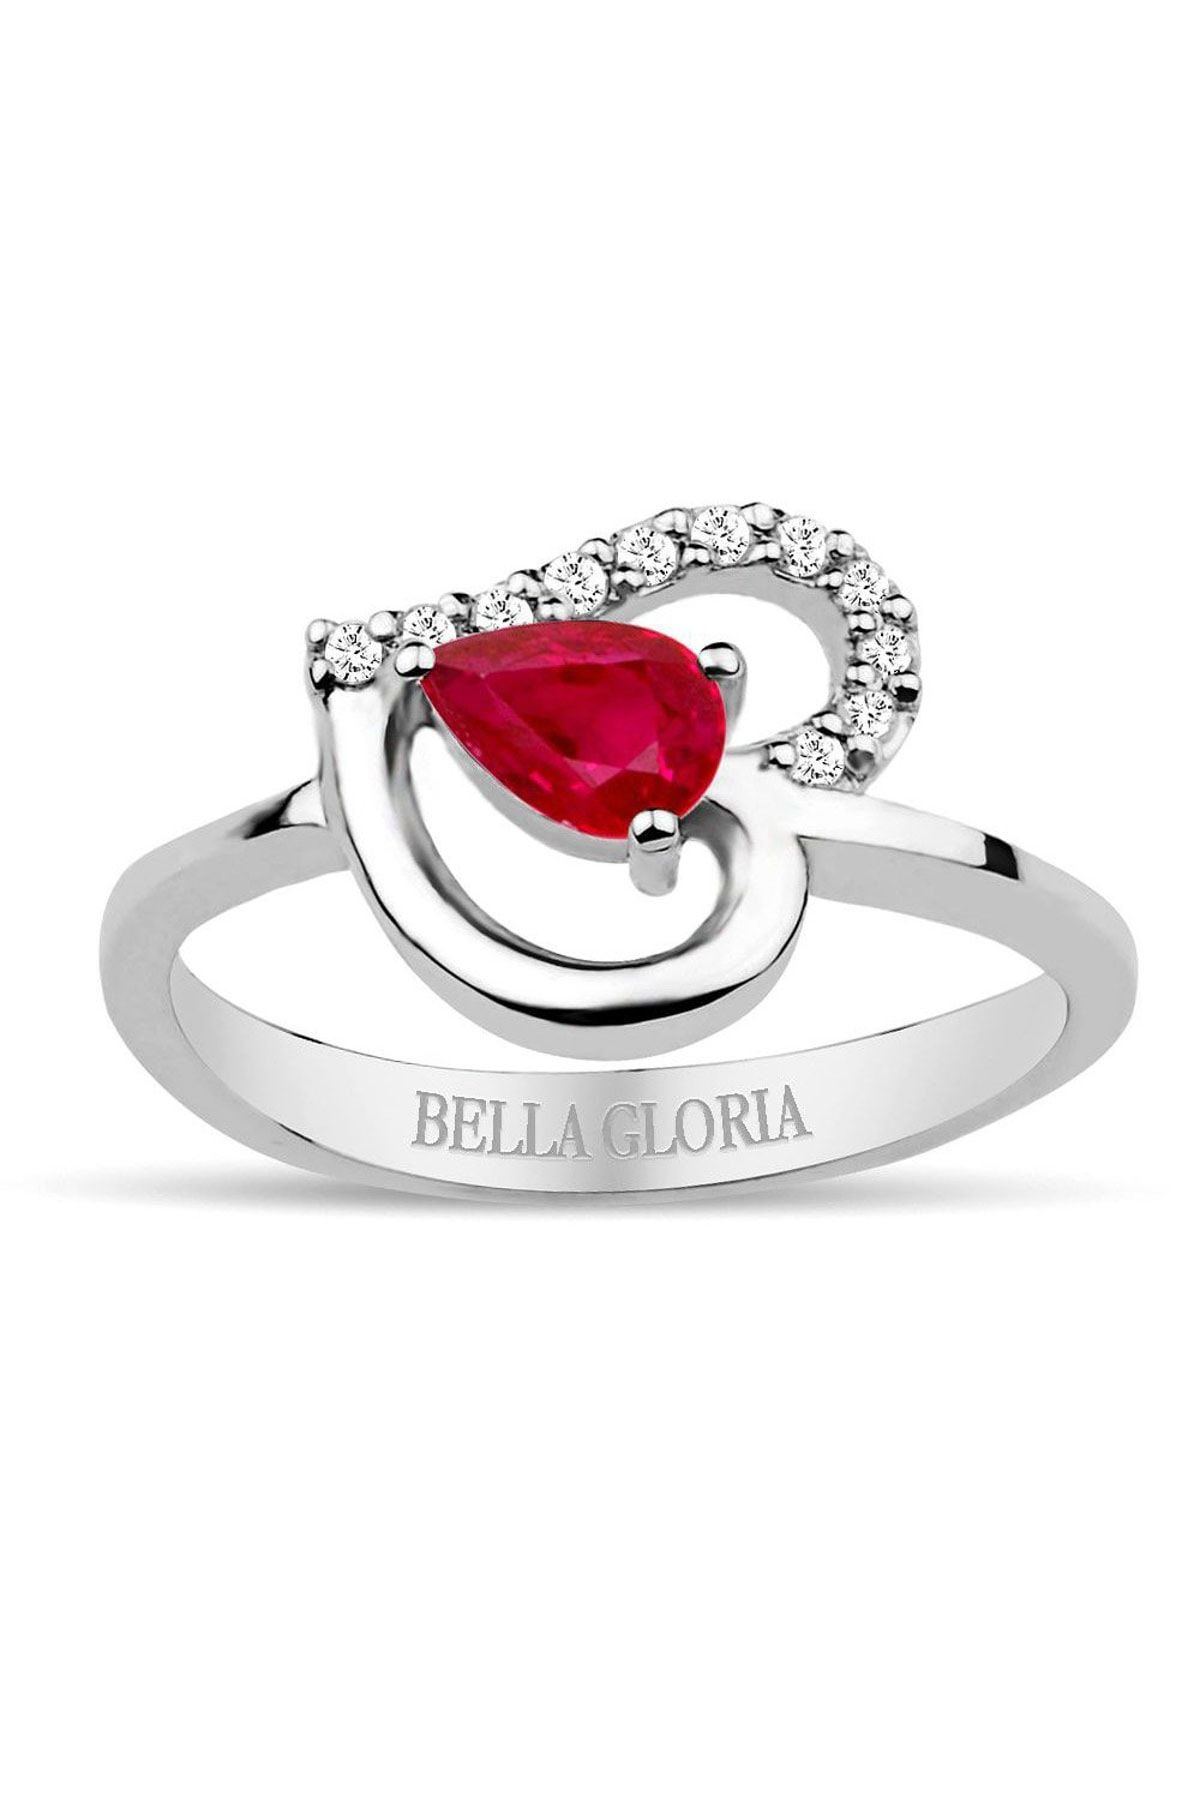 Bella Gloria Pırlanta Kırmızı Kuartz Kalp Yüzük (GPY0008)